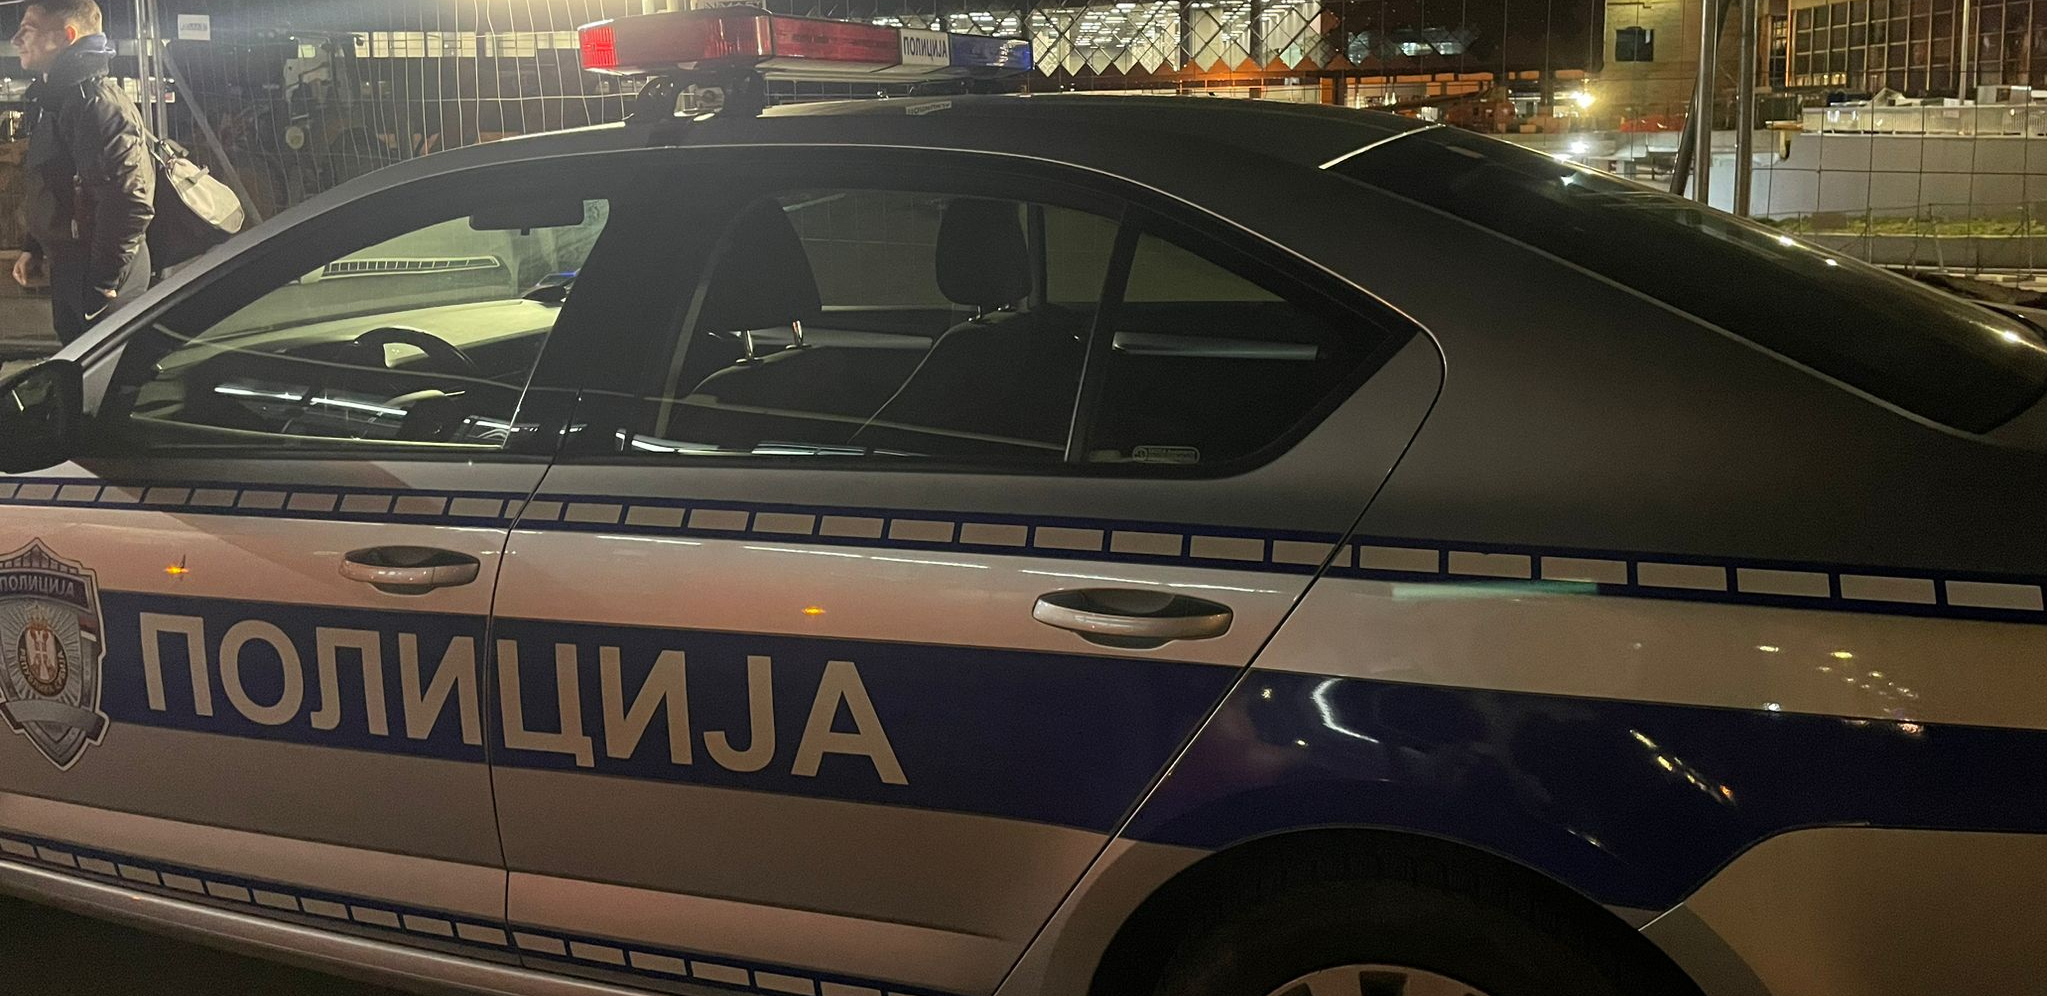 MUŠKARAC SUPRUGU POSEKAO NOŽEM PO VRATU I LICU Detalji napada u tržnom centru u Beogradu